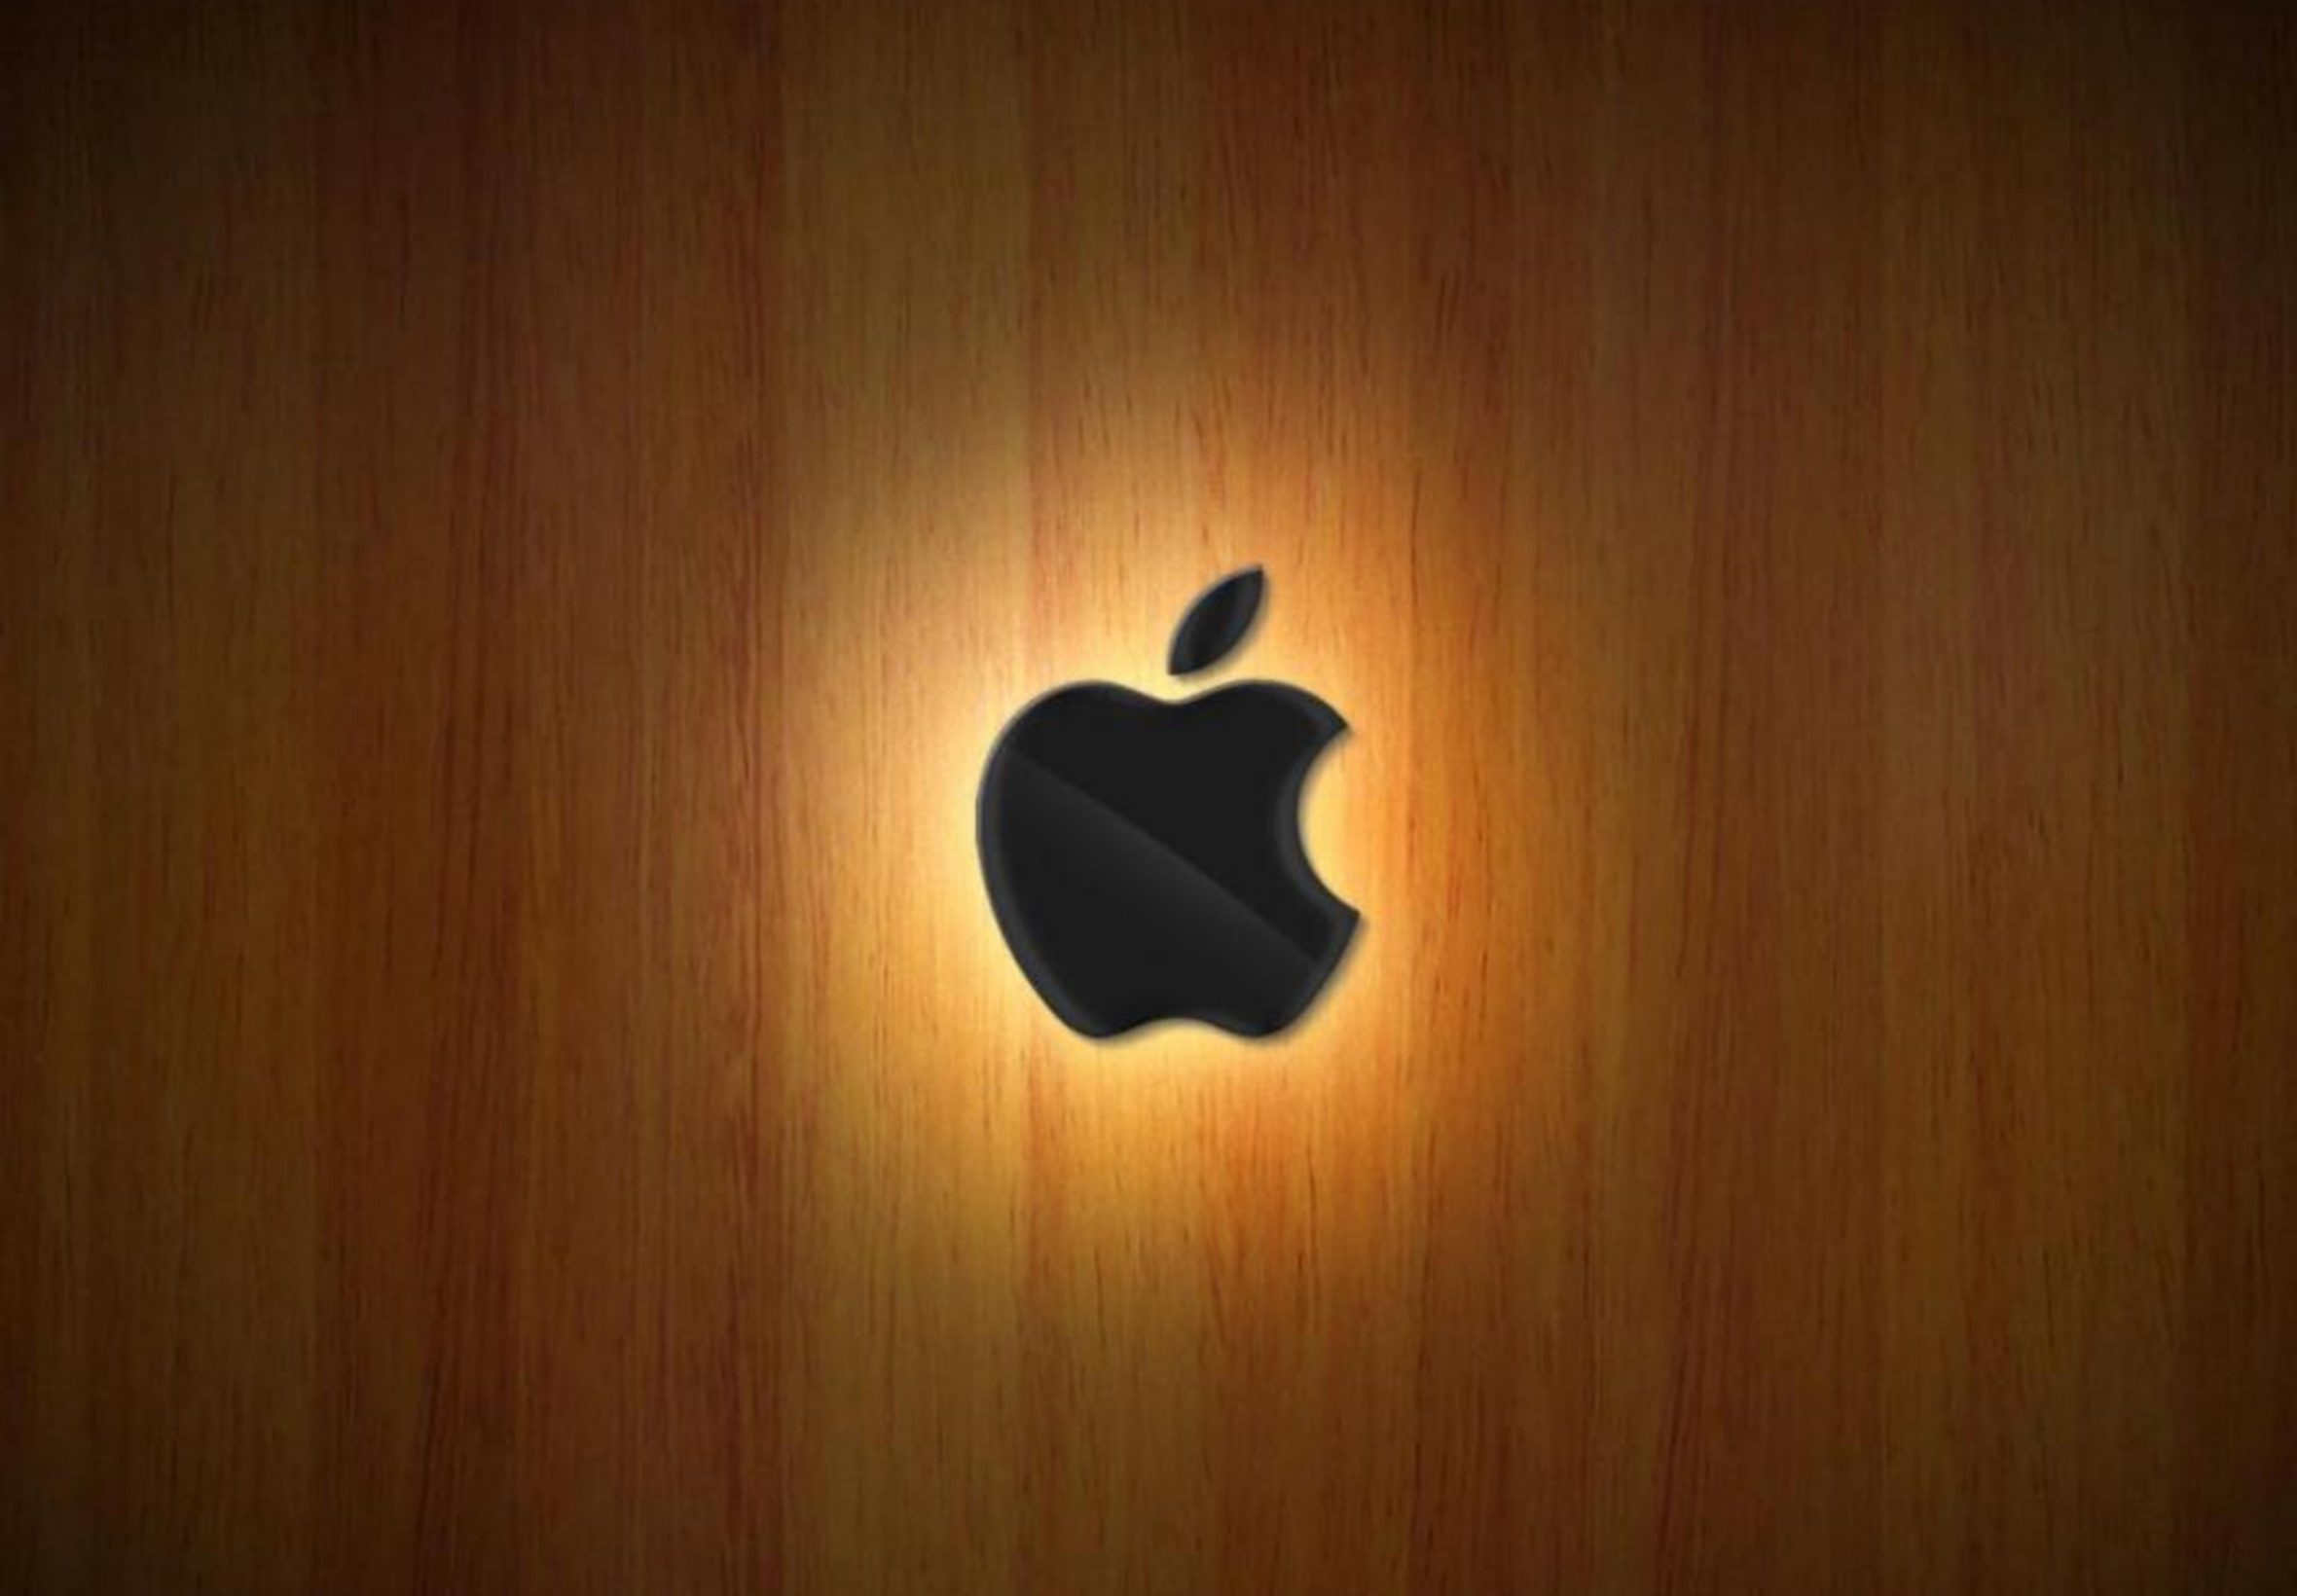 2360x1640 iPad Air wallpaper 4k Apple Logo Wood Ipad Wallpaper 2360x1640 pixels resolution